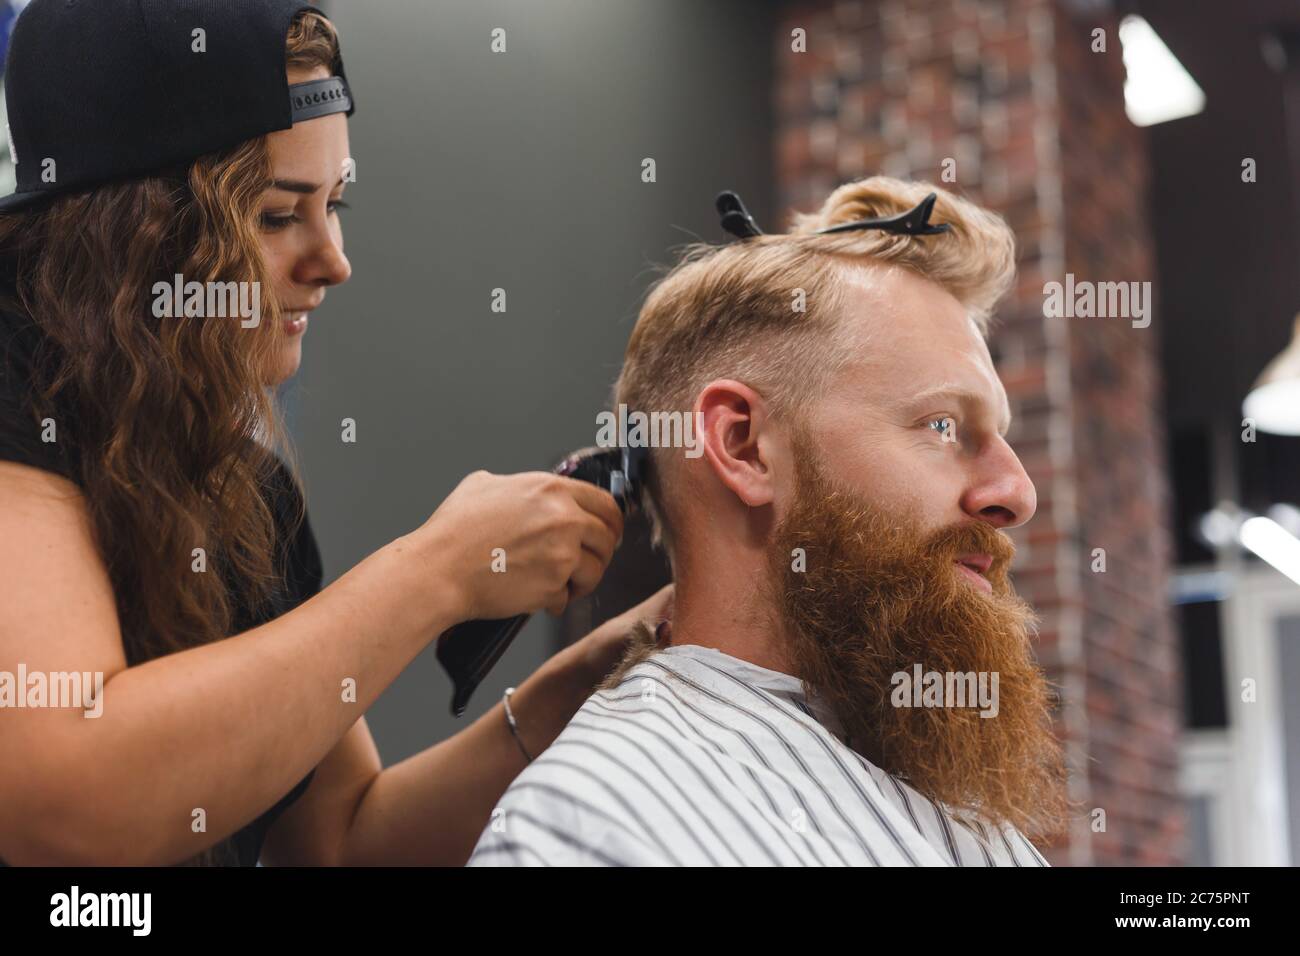 Le masque de coiffeur féminin coupe les poils d'un homme avec une tondeuse à cheveux. Coiffure pendant la prise de distance sociale Banque D'Images